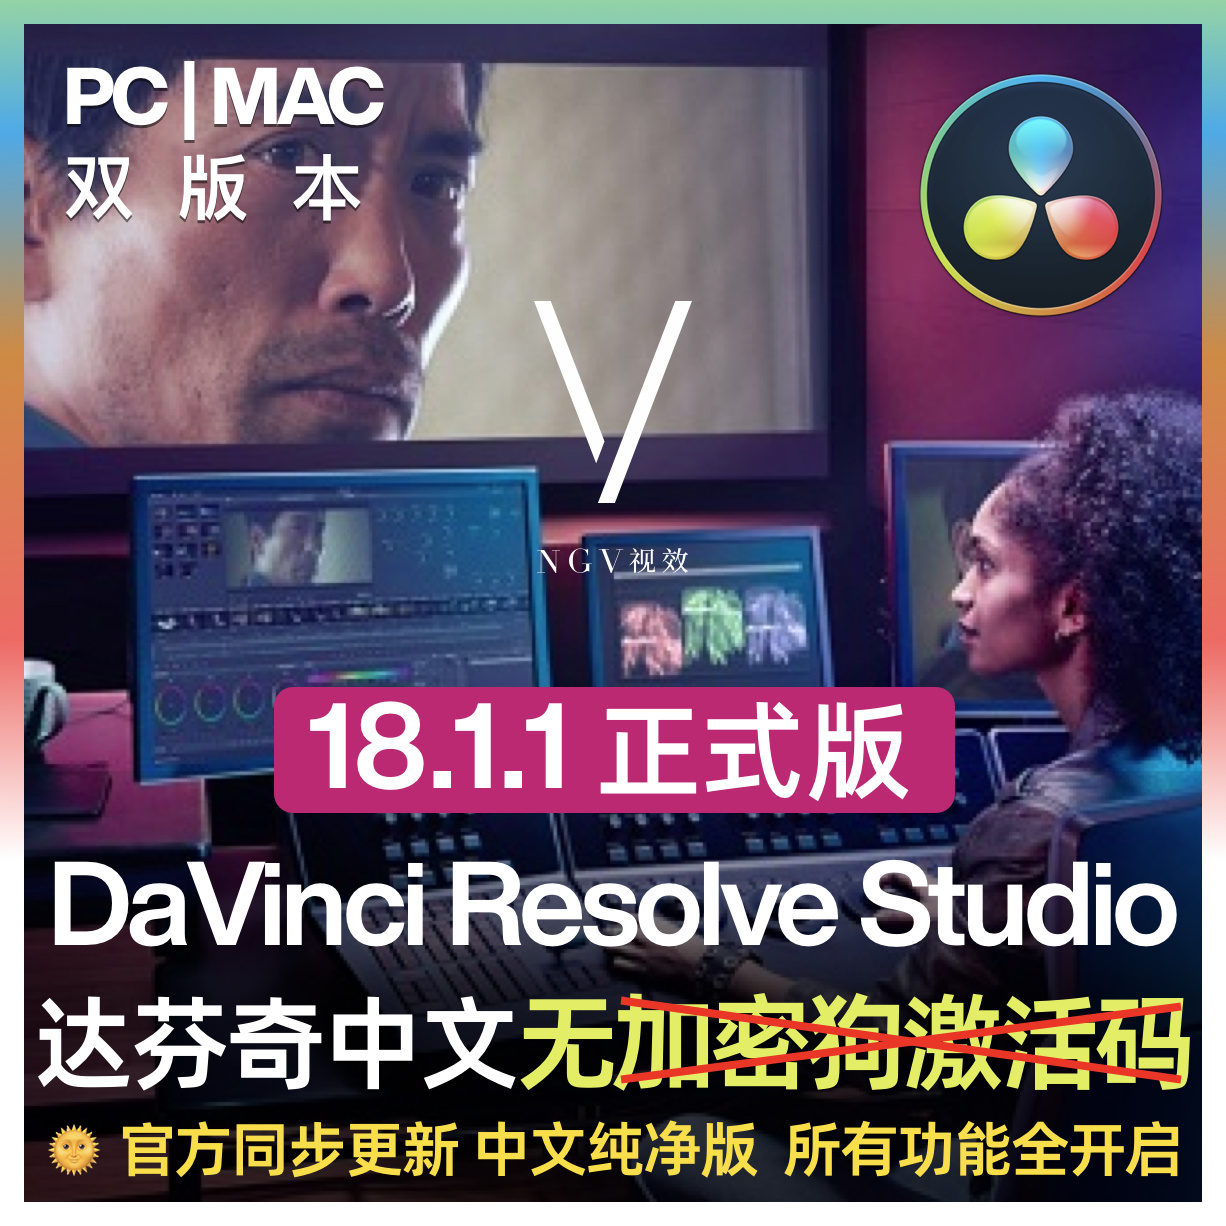 【电影调色】达芬奇 Davinci Resolve Studio 18.1.1Mac PC 电影调色剪辑软件